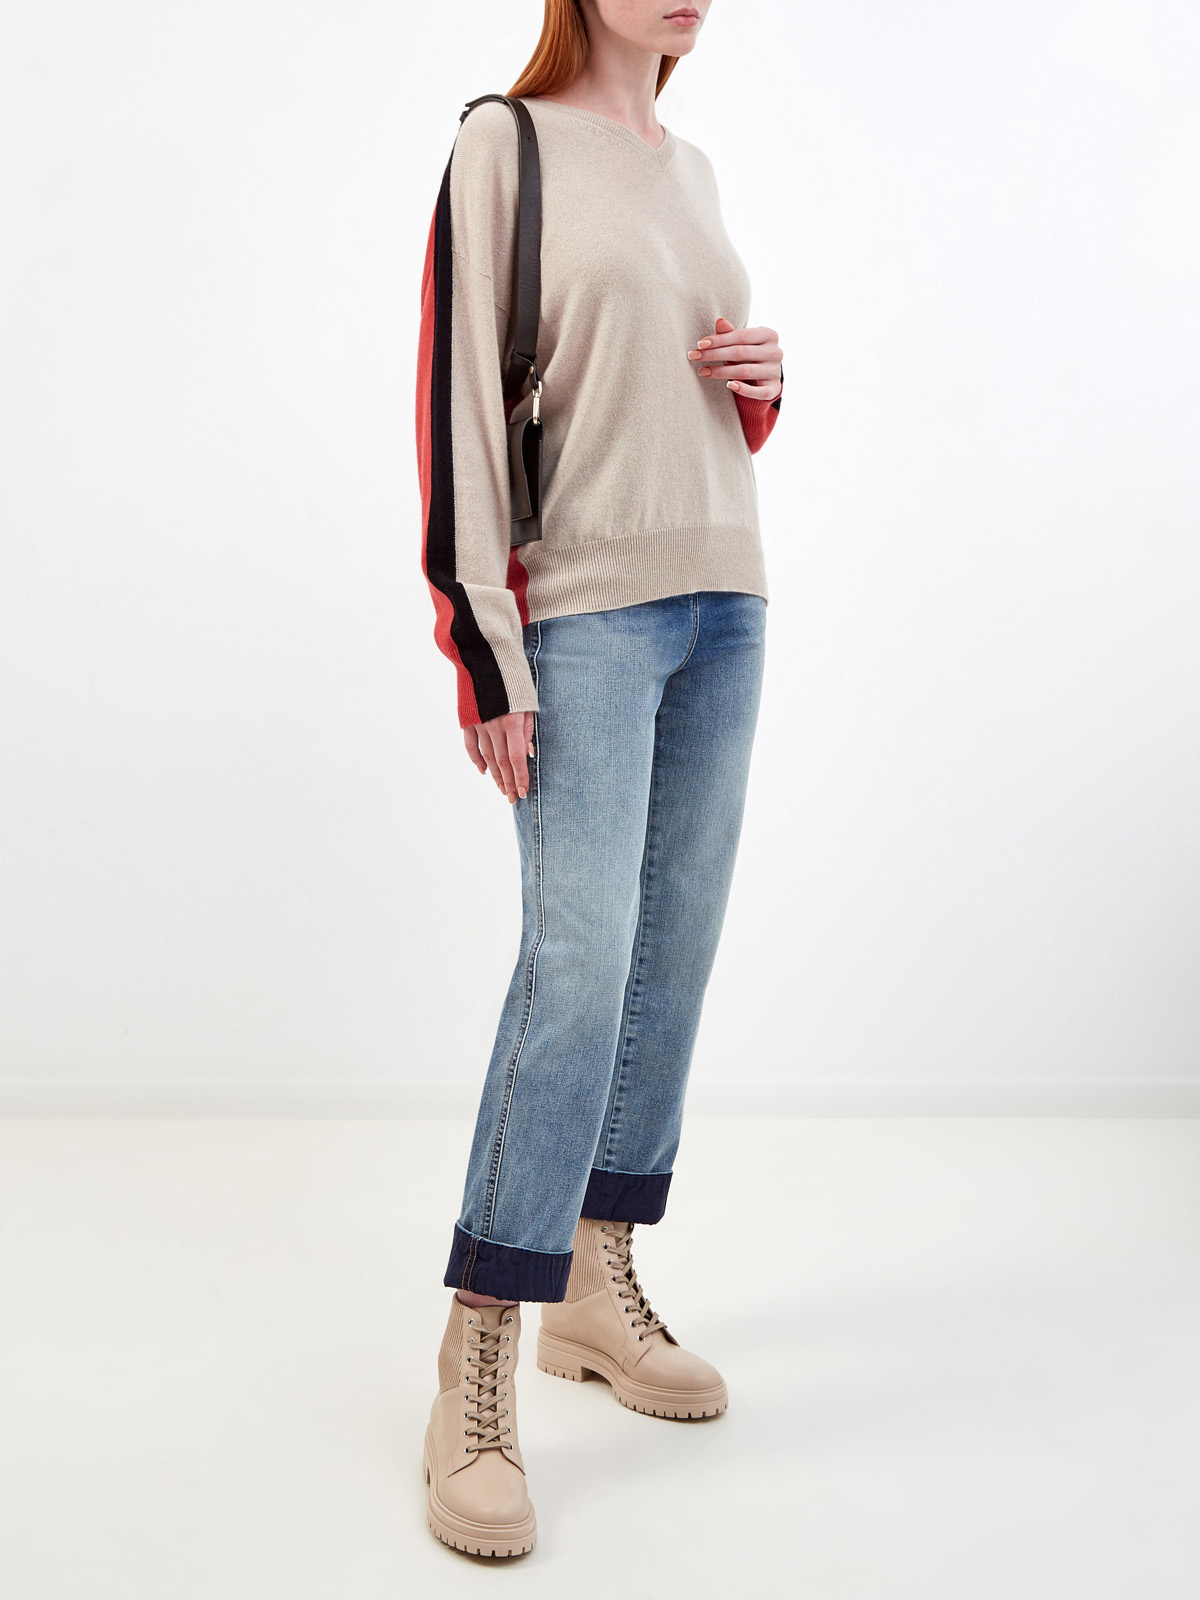 Пуловер в стиле colorblock из мягкого кашемира LORENA ANTONIAZZI, цвет мульти, размер 42;44;46;40 - фото 2